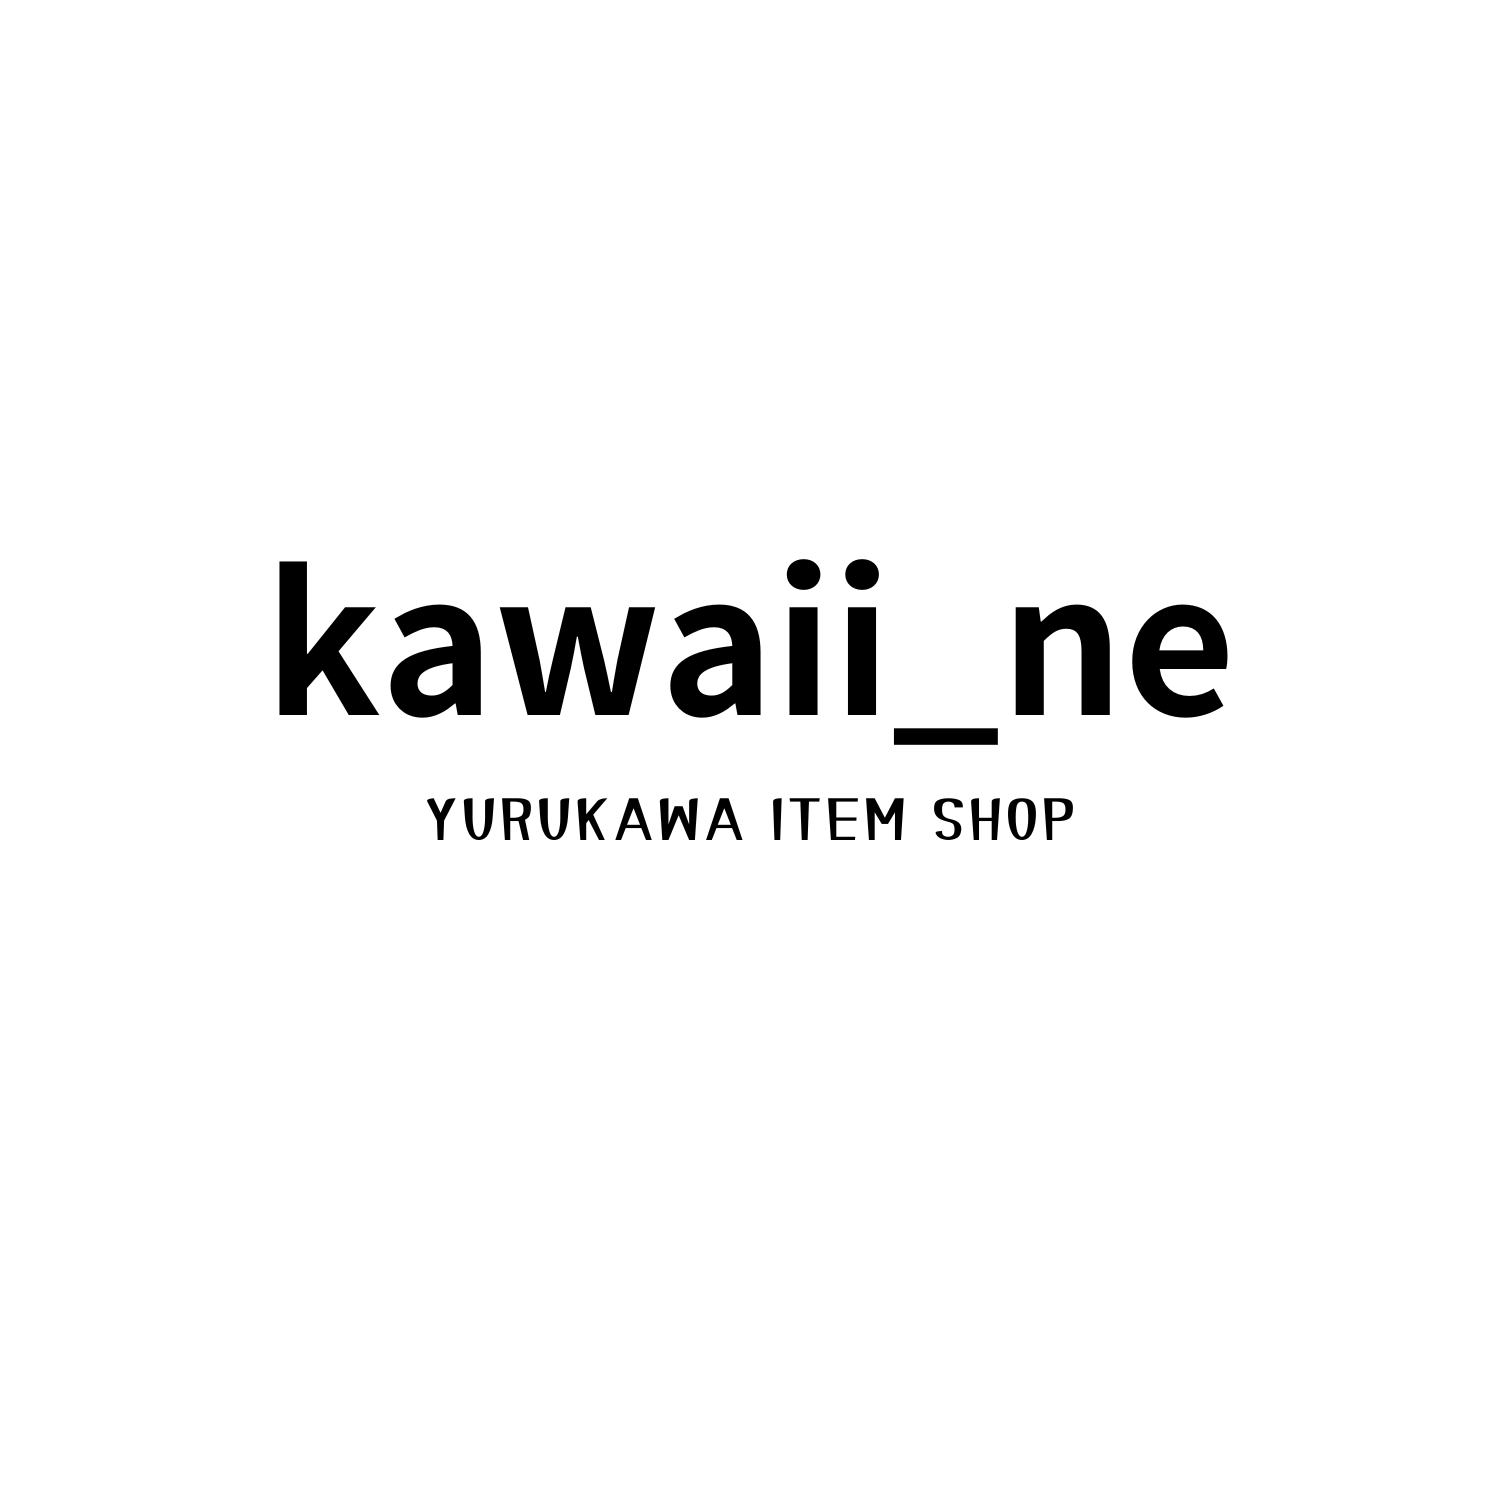 kawaiine2